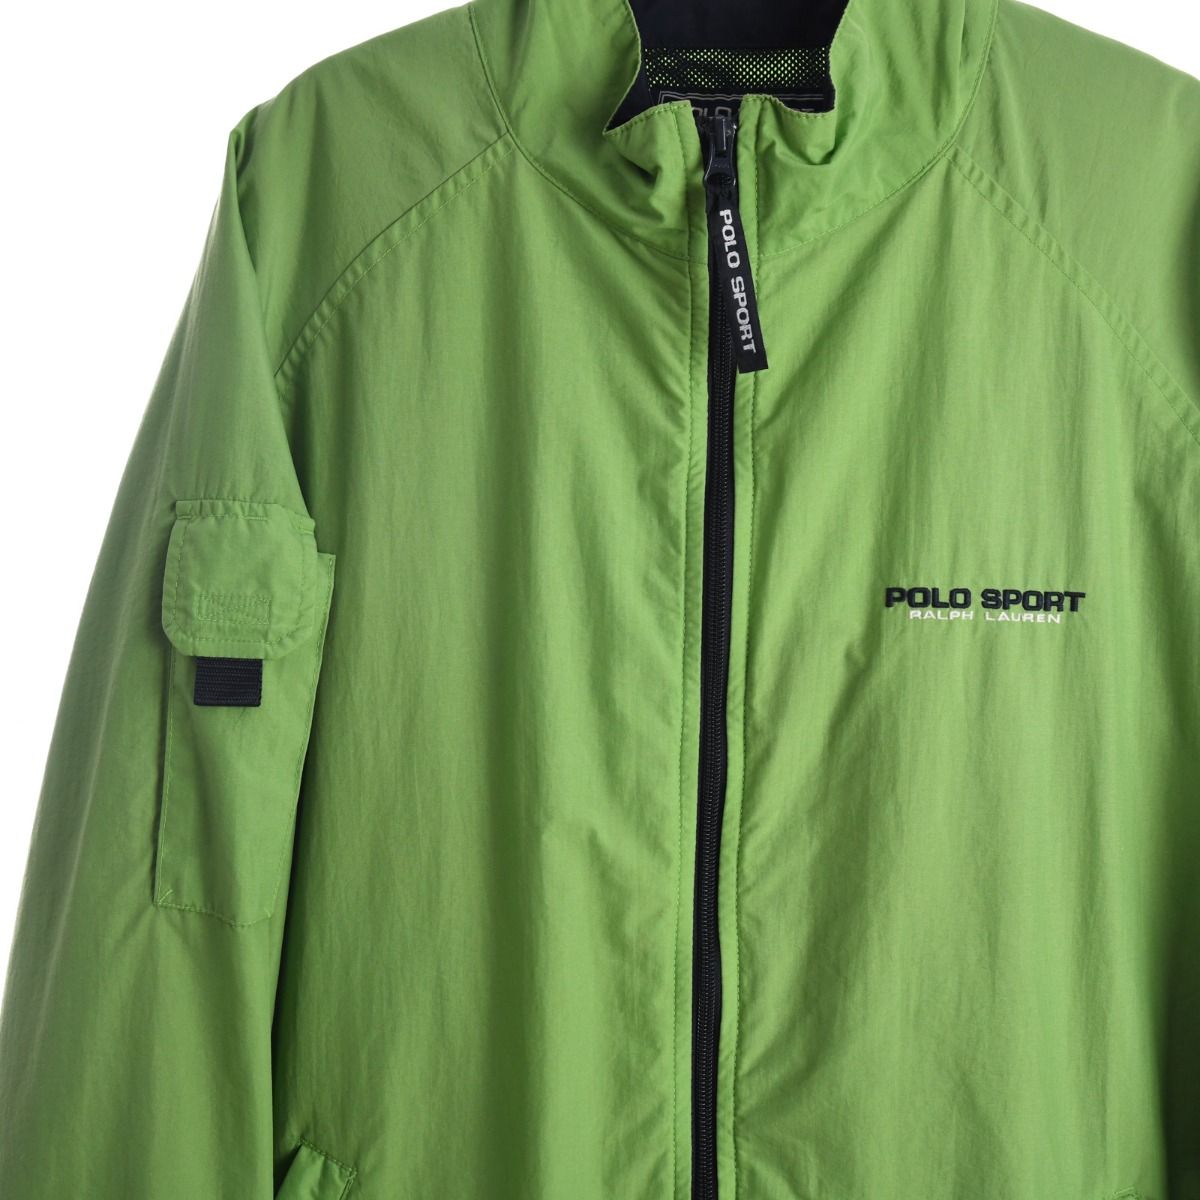 Ralph Lauren Polo Sport Light Jacket